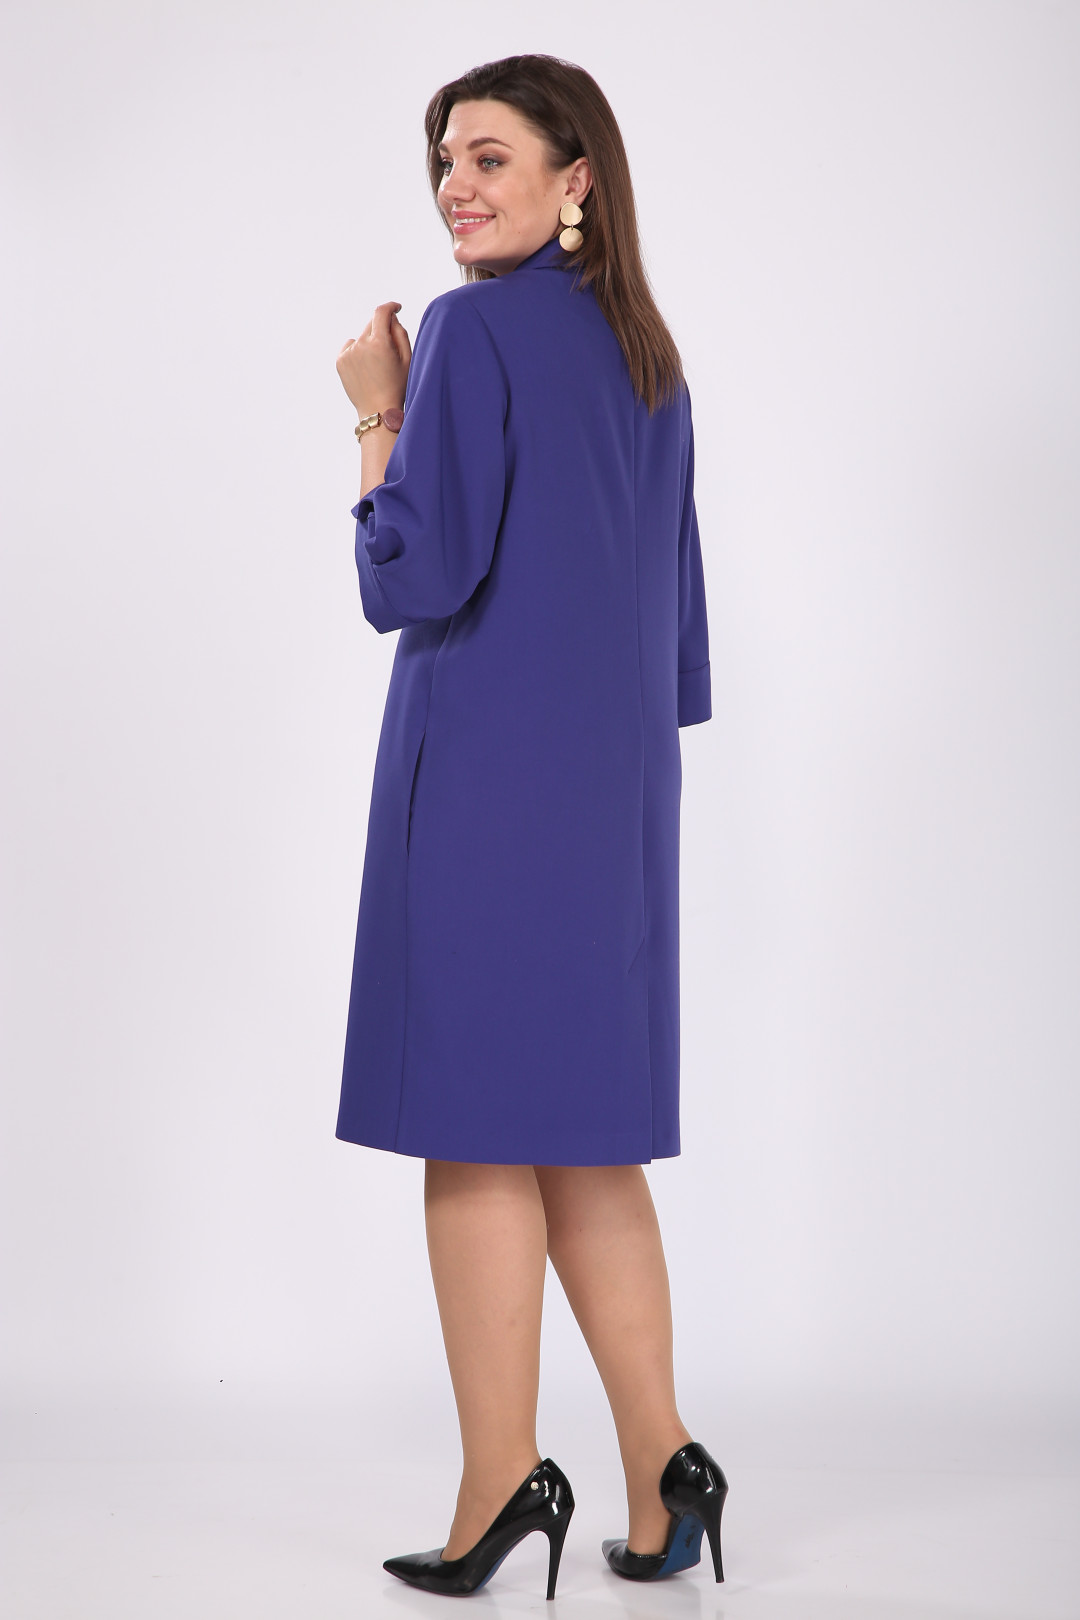 Платье Карина Делюкс М-1069 ультрафиолет